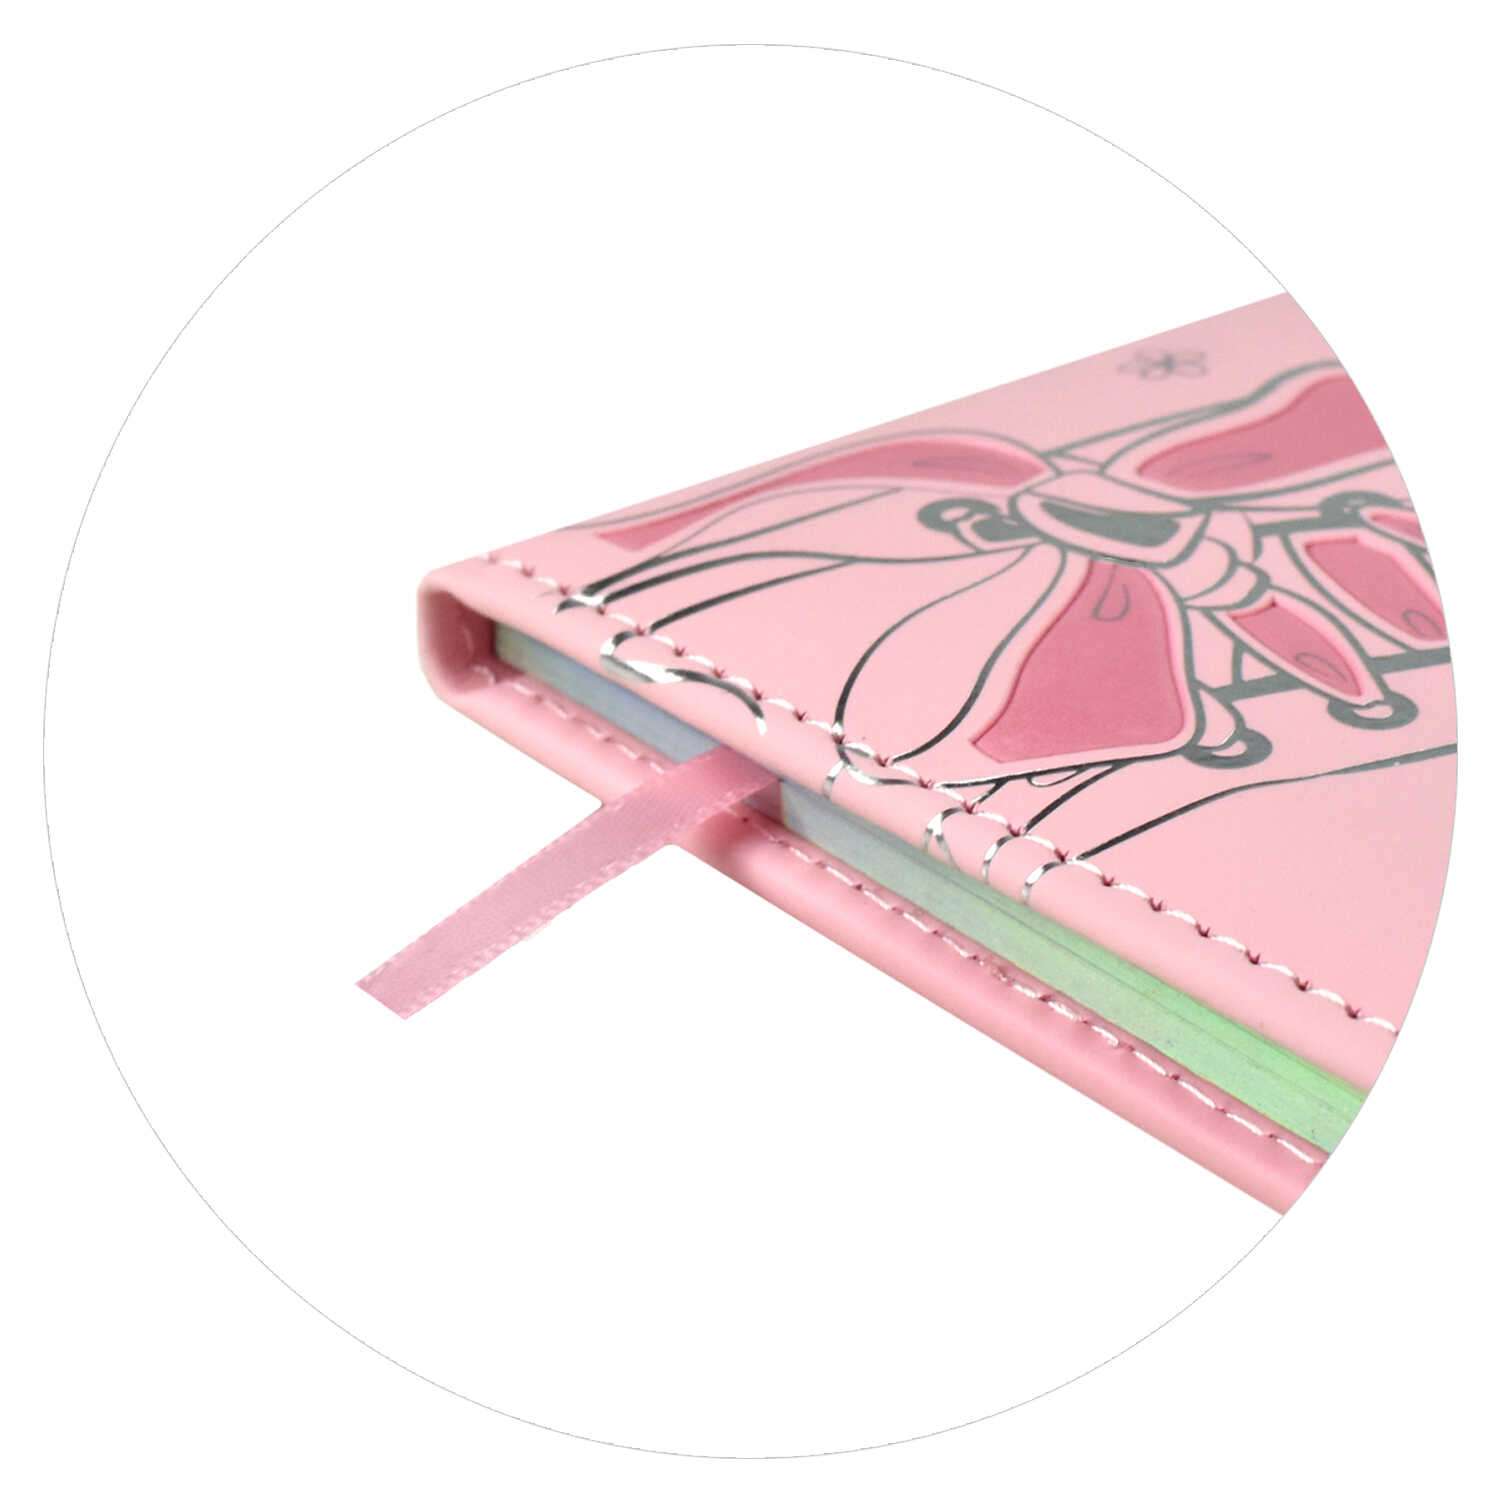 Дневник школьный ТД Феникс Кеды розовые 48 листов твёрдый переплёт с поролоном - фото 12